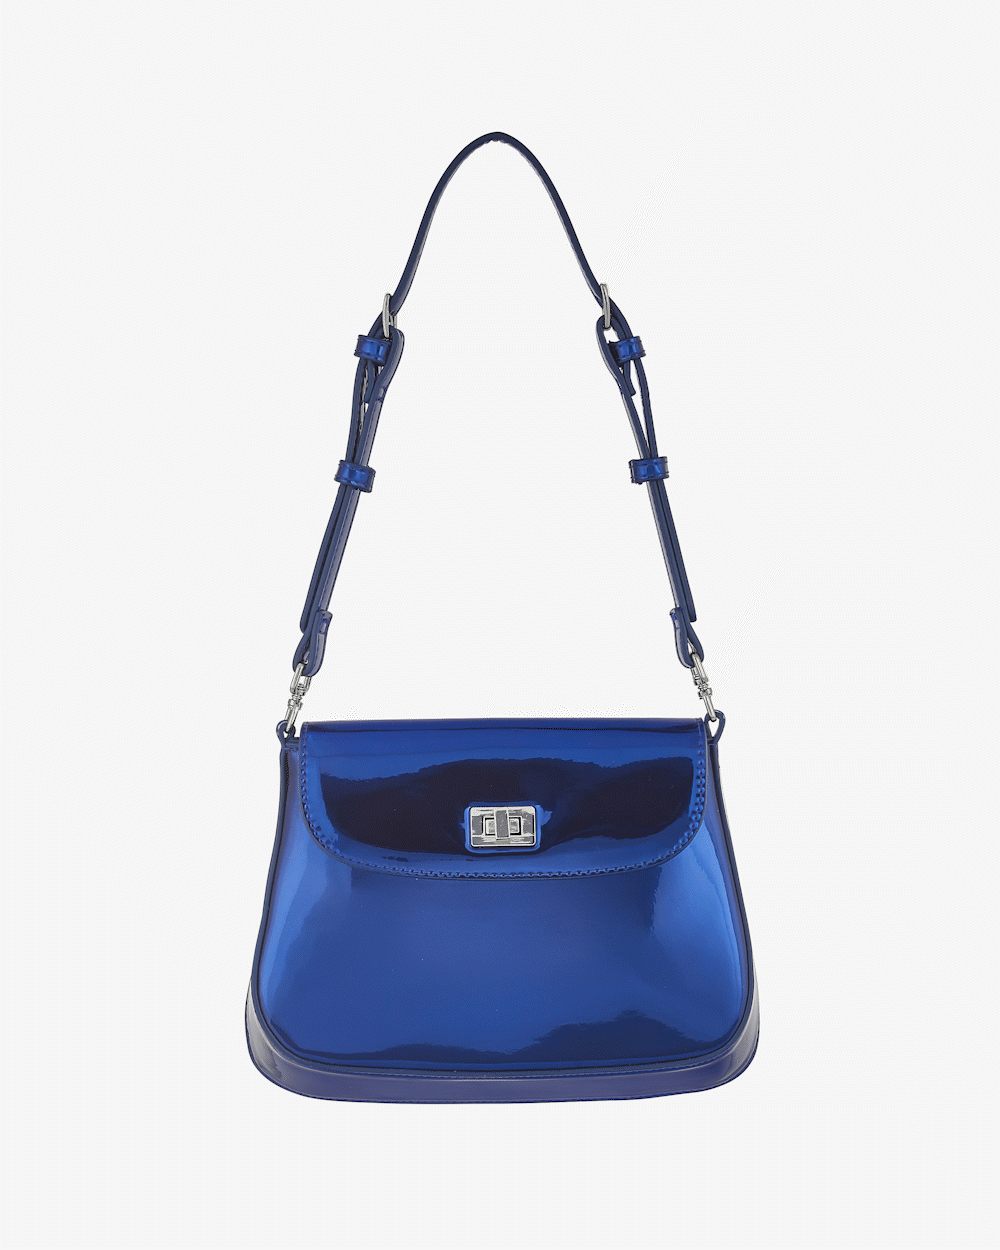 Mila Bag - Metallic Blue